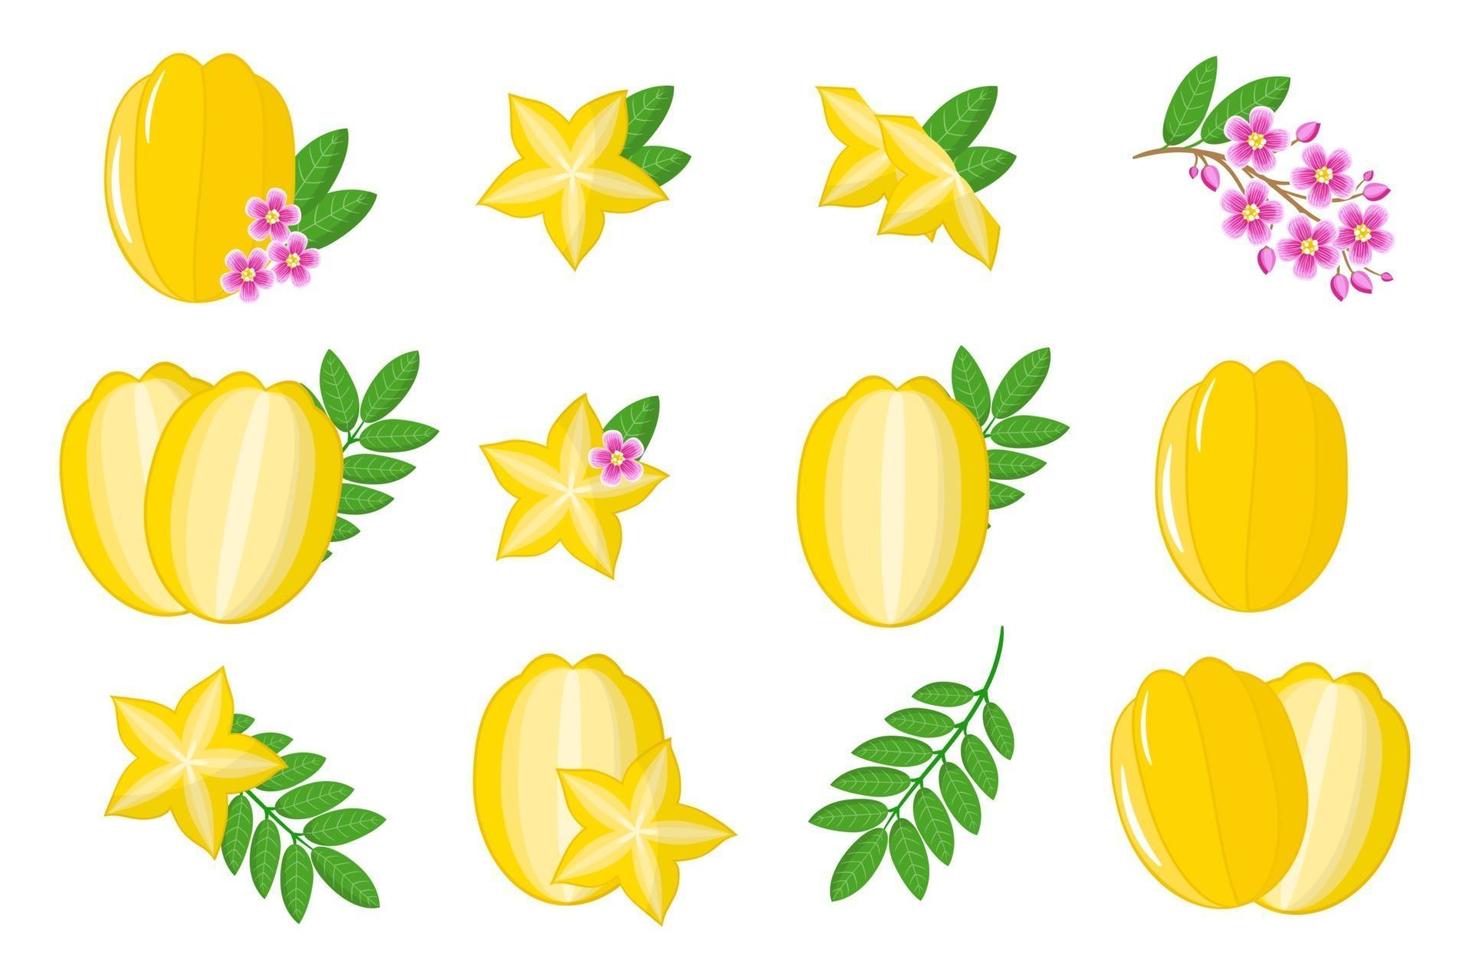 Satz Illustrationen mit exotischen Früchten, Blumen und Blättern der Karambola lokalisiert auf einem weißen Hintergrund. vektor